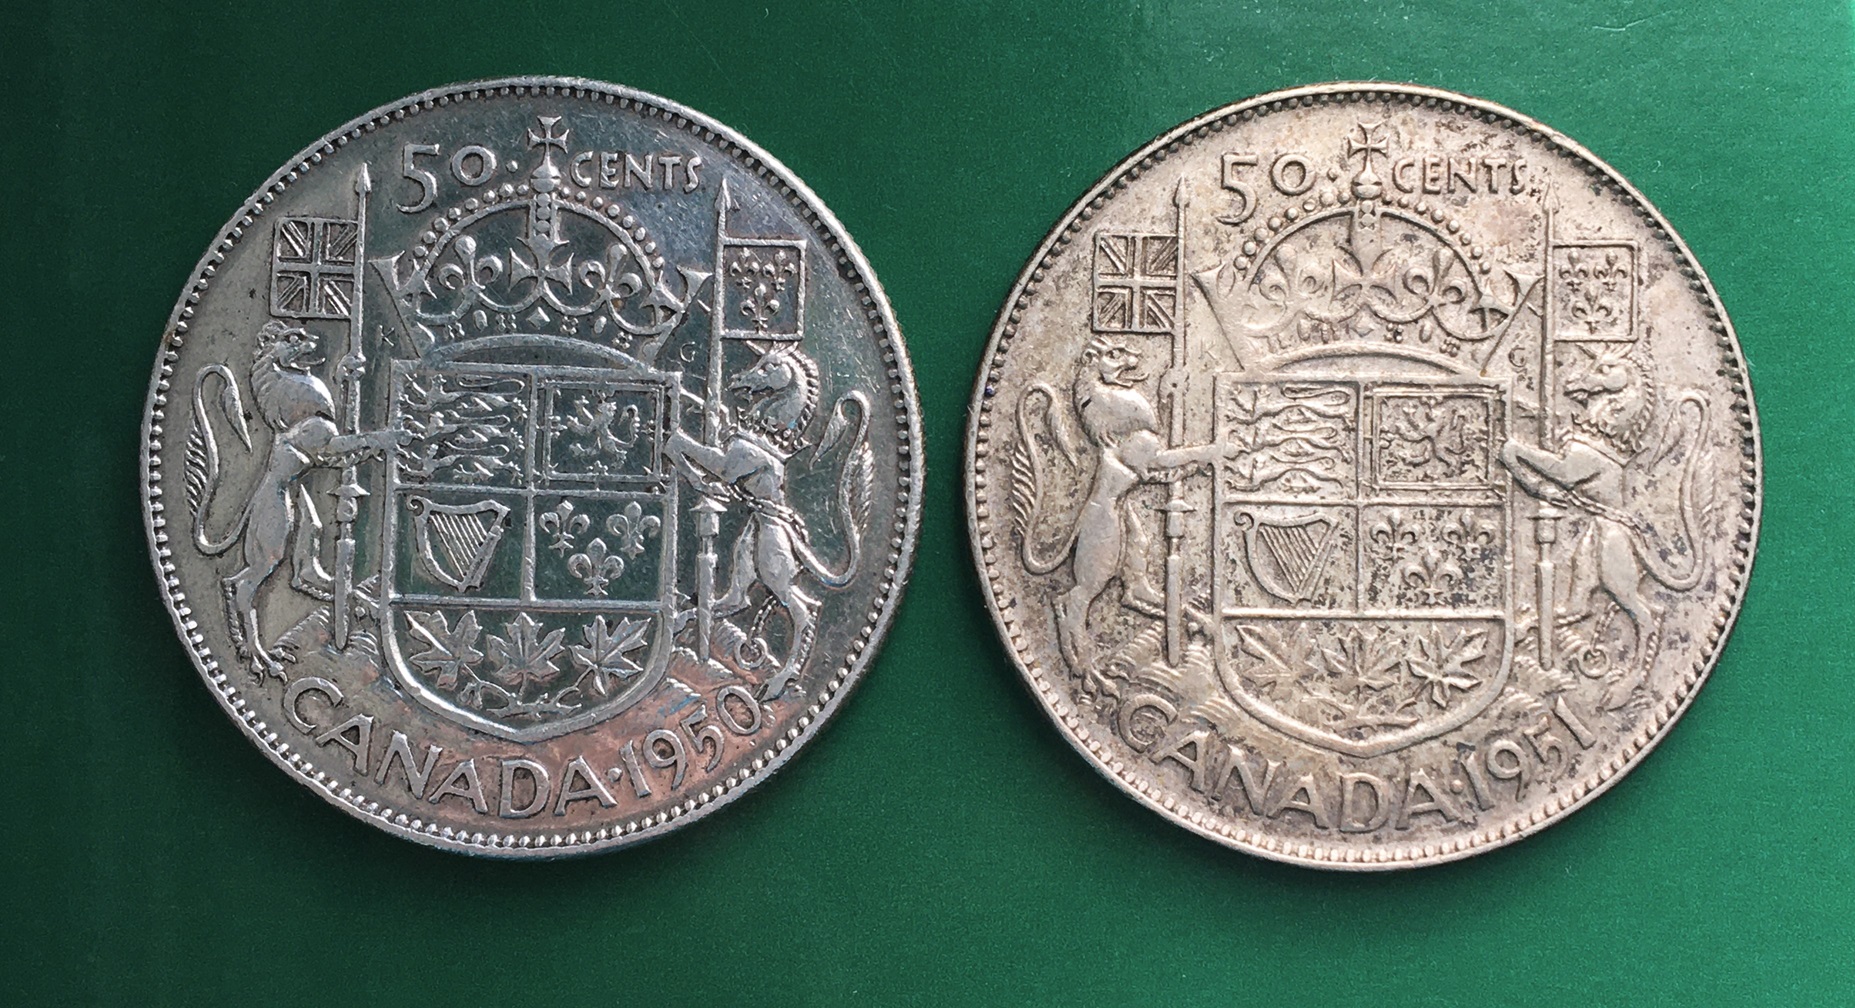 2 50 cents revers 1950 1951.JPG